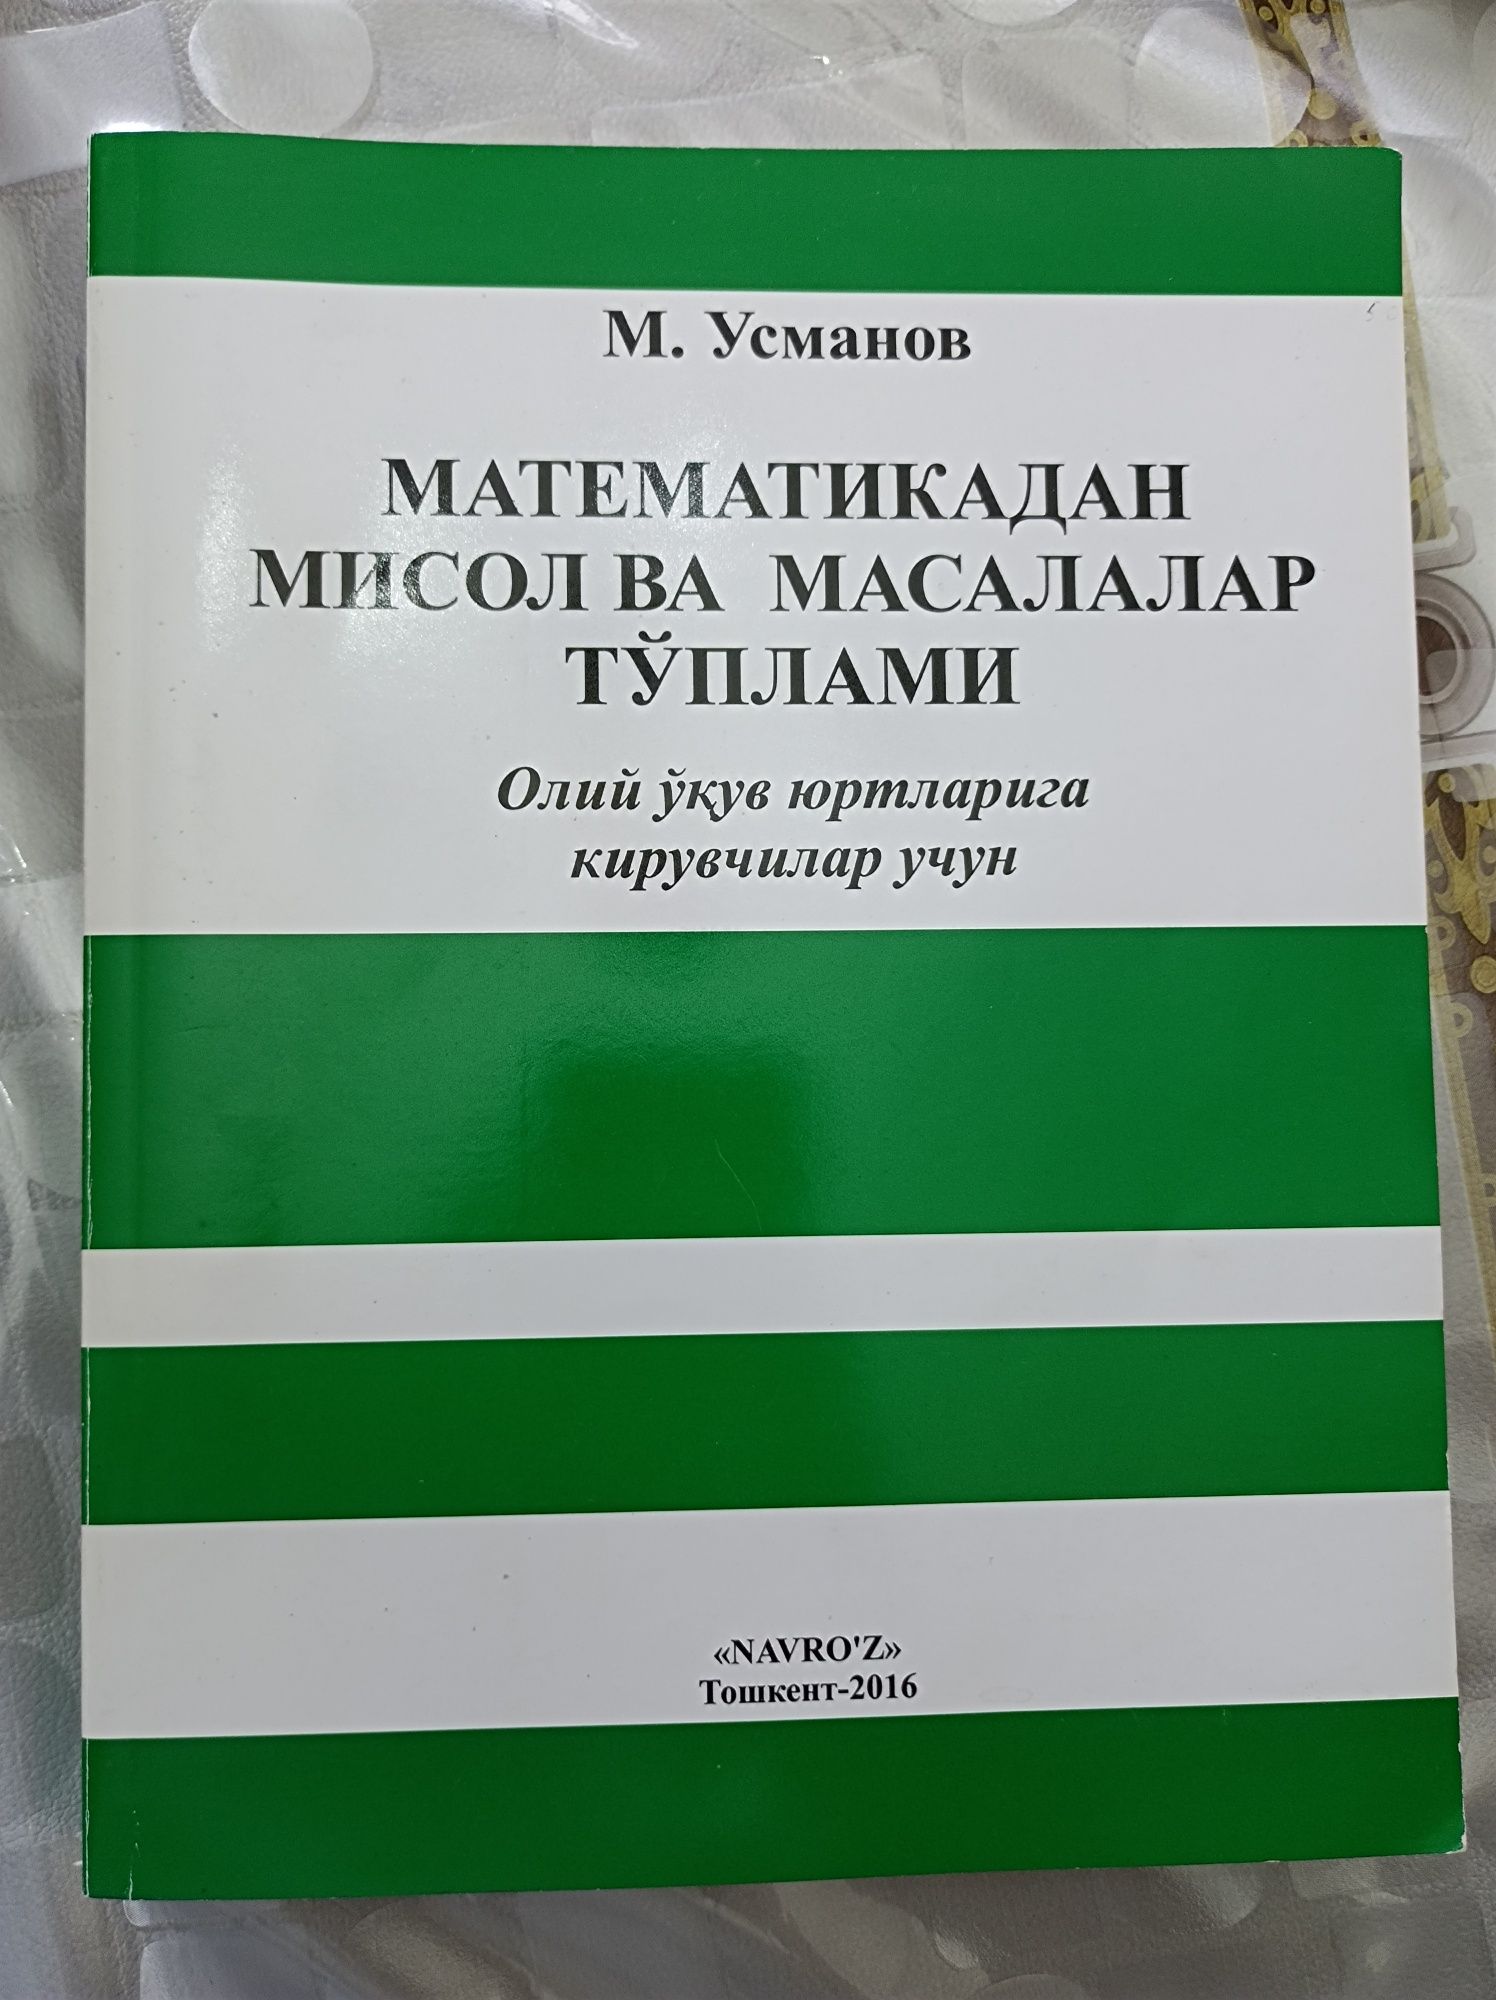 Сборник задач по математике М.Усманов